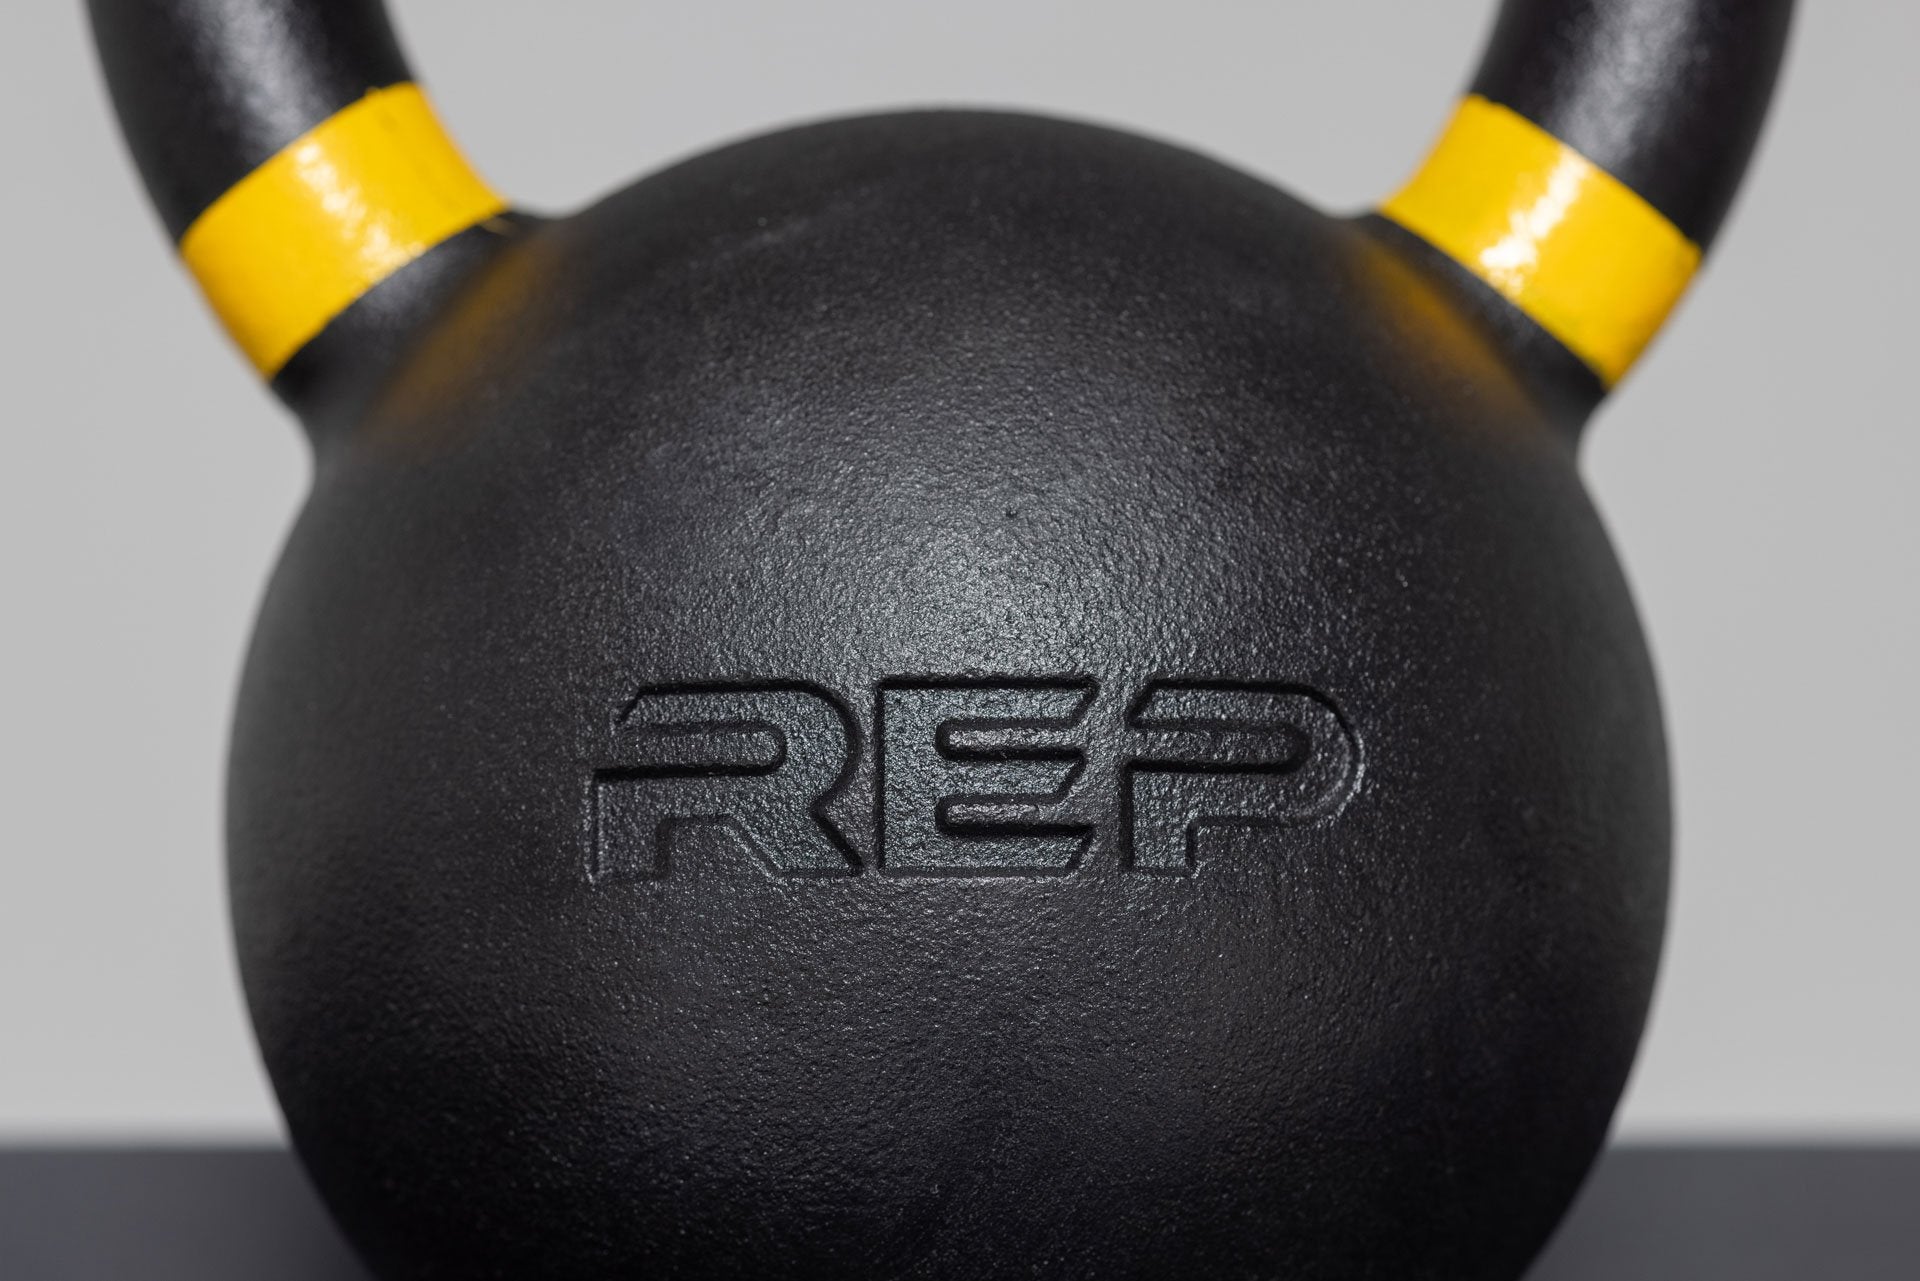 REP logo on kettlebell